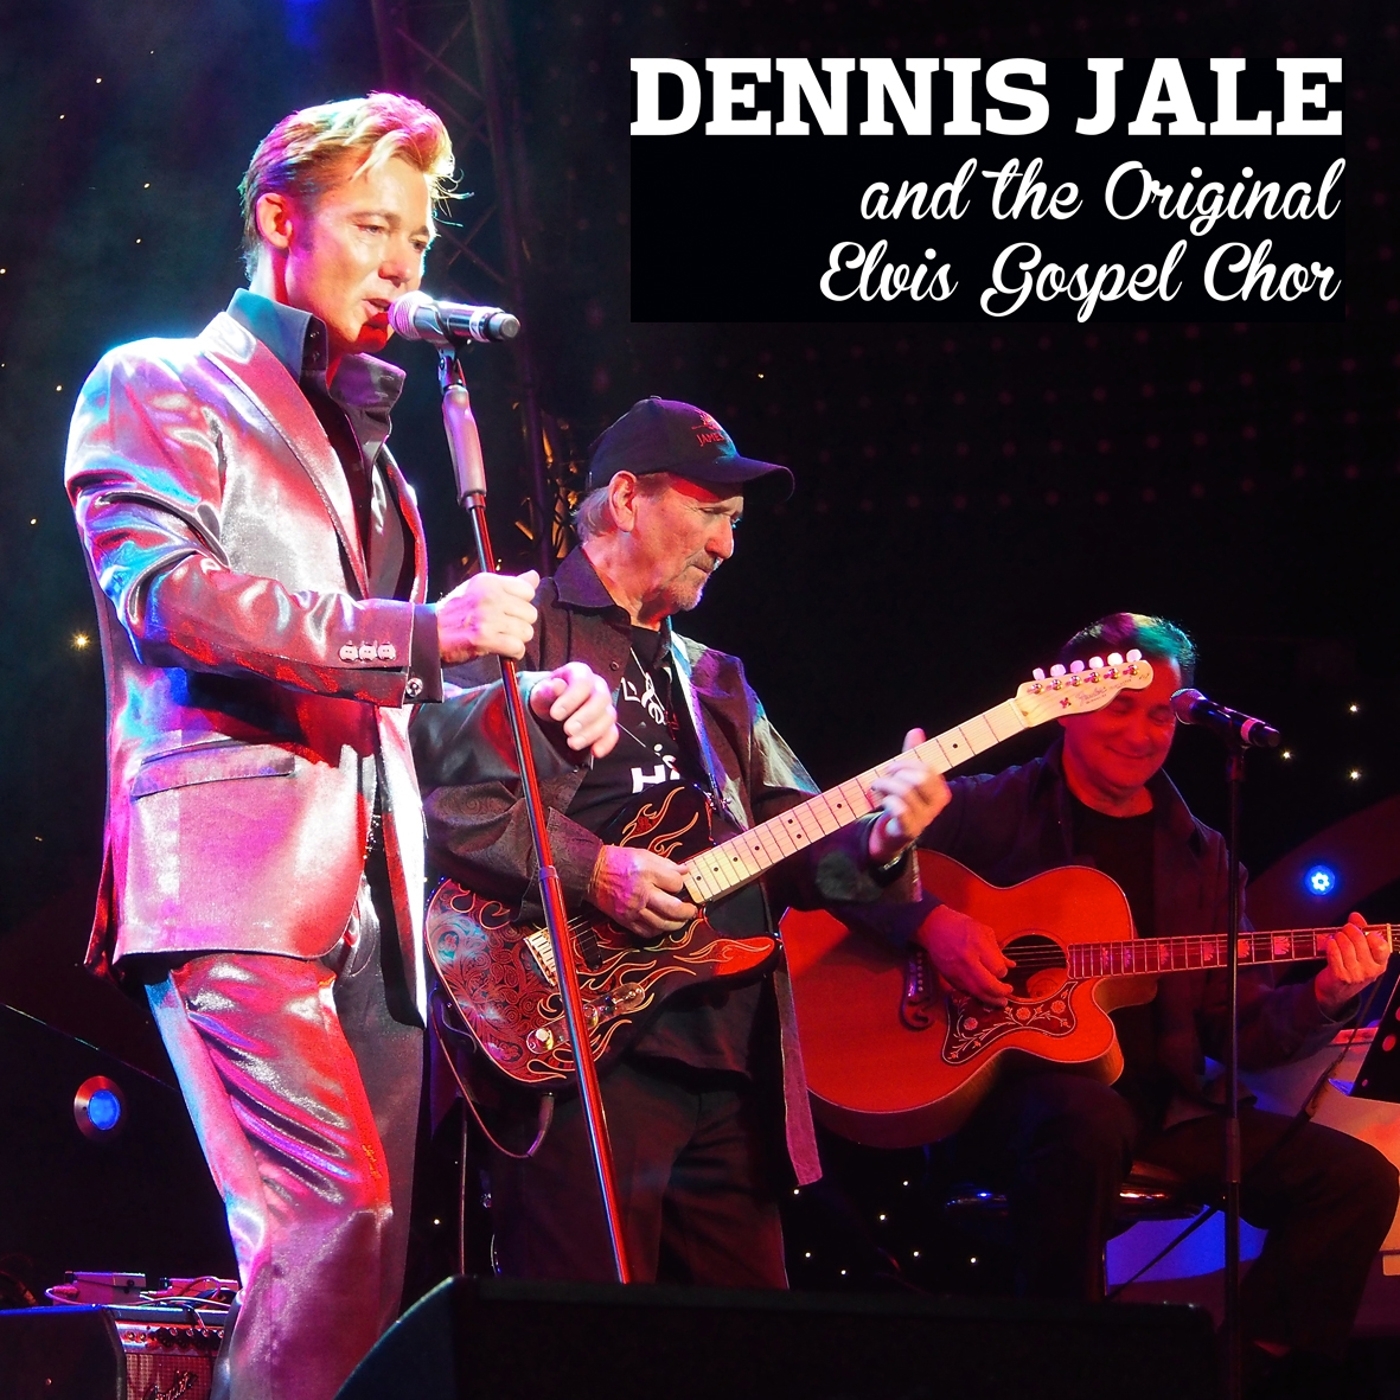 Dennis Jale & The Original Elvis Gospel Chor © Timeline GmbH